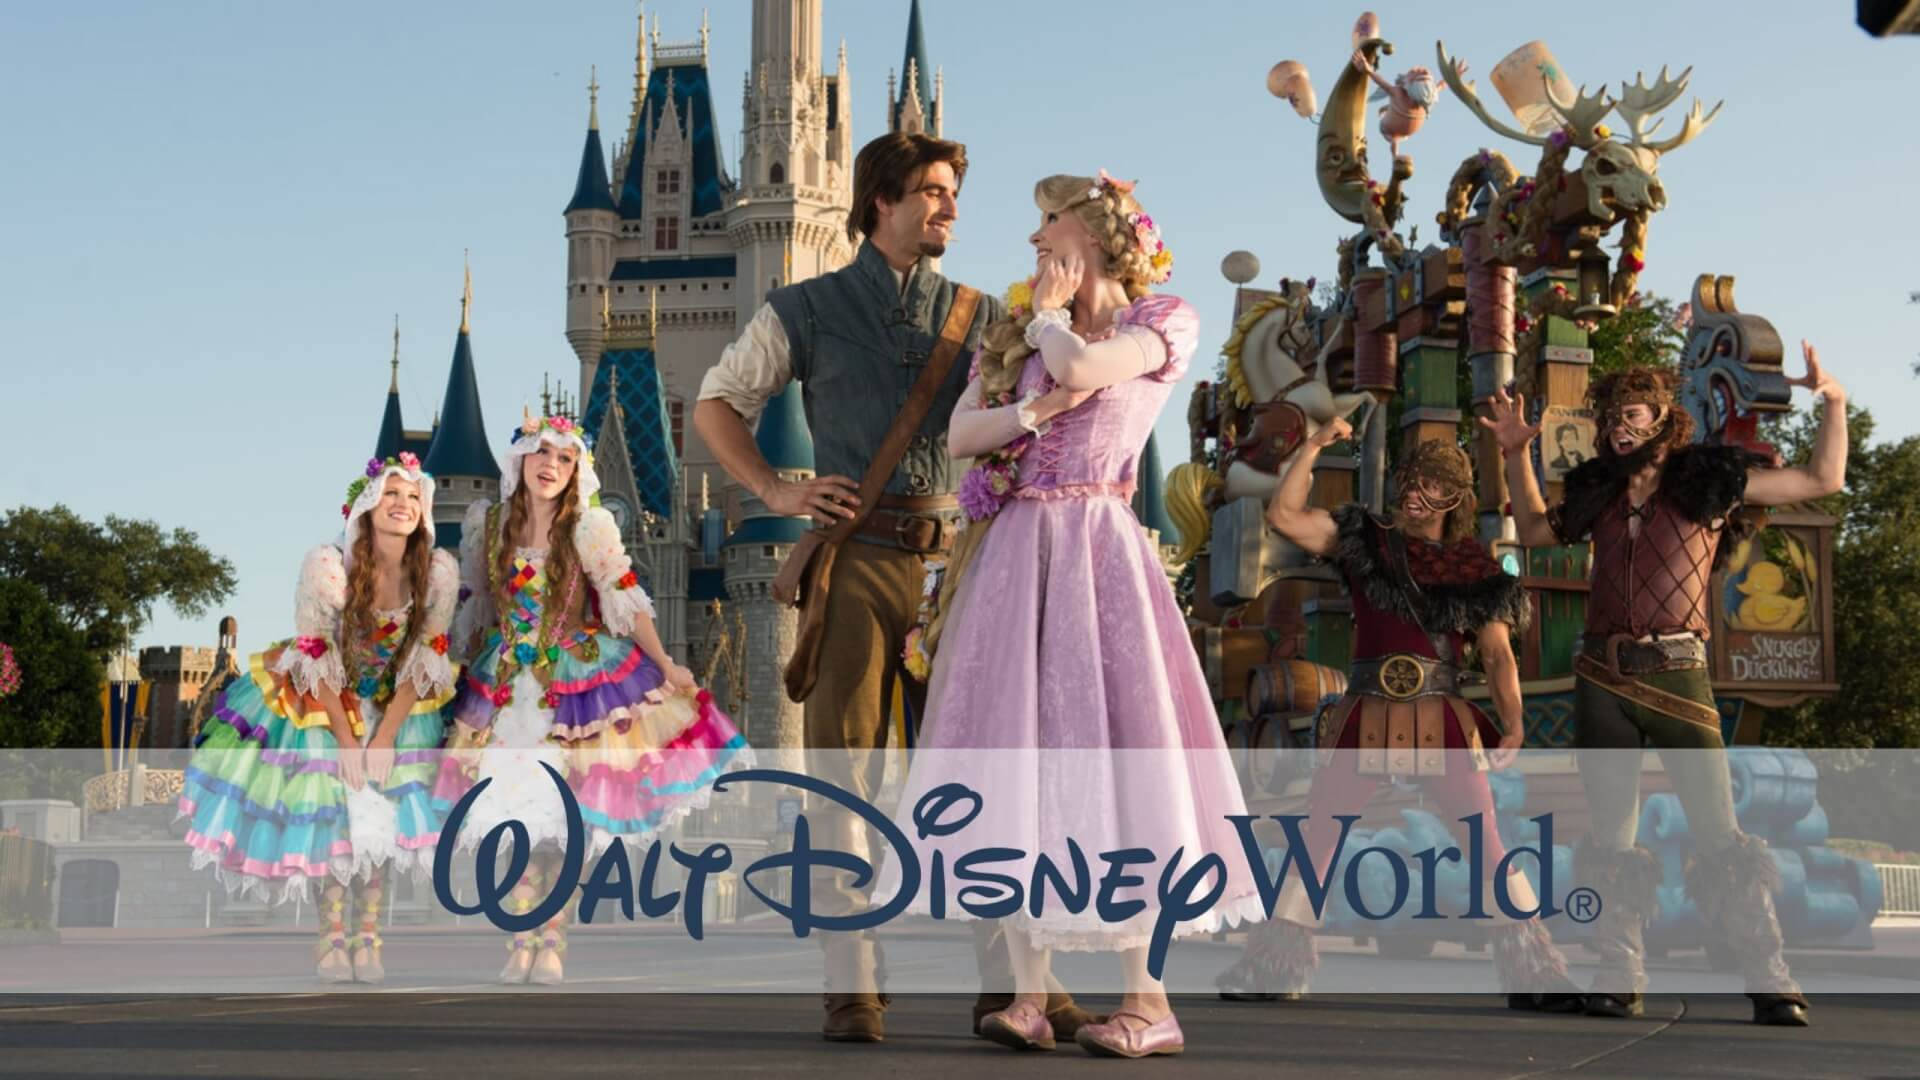 Nyd synet af Disneys velkendte tegn på Walt Disney World-tapet. Wallpaper